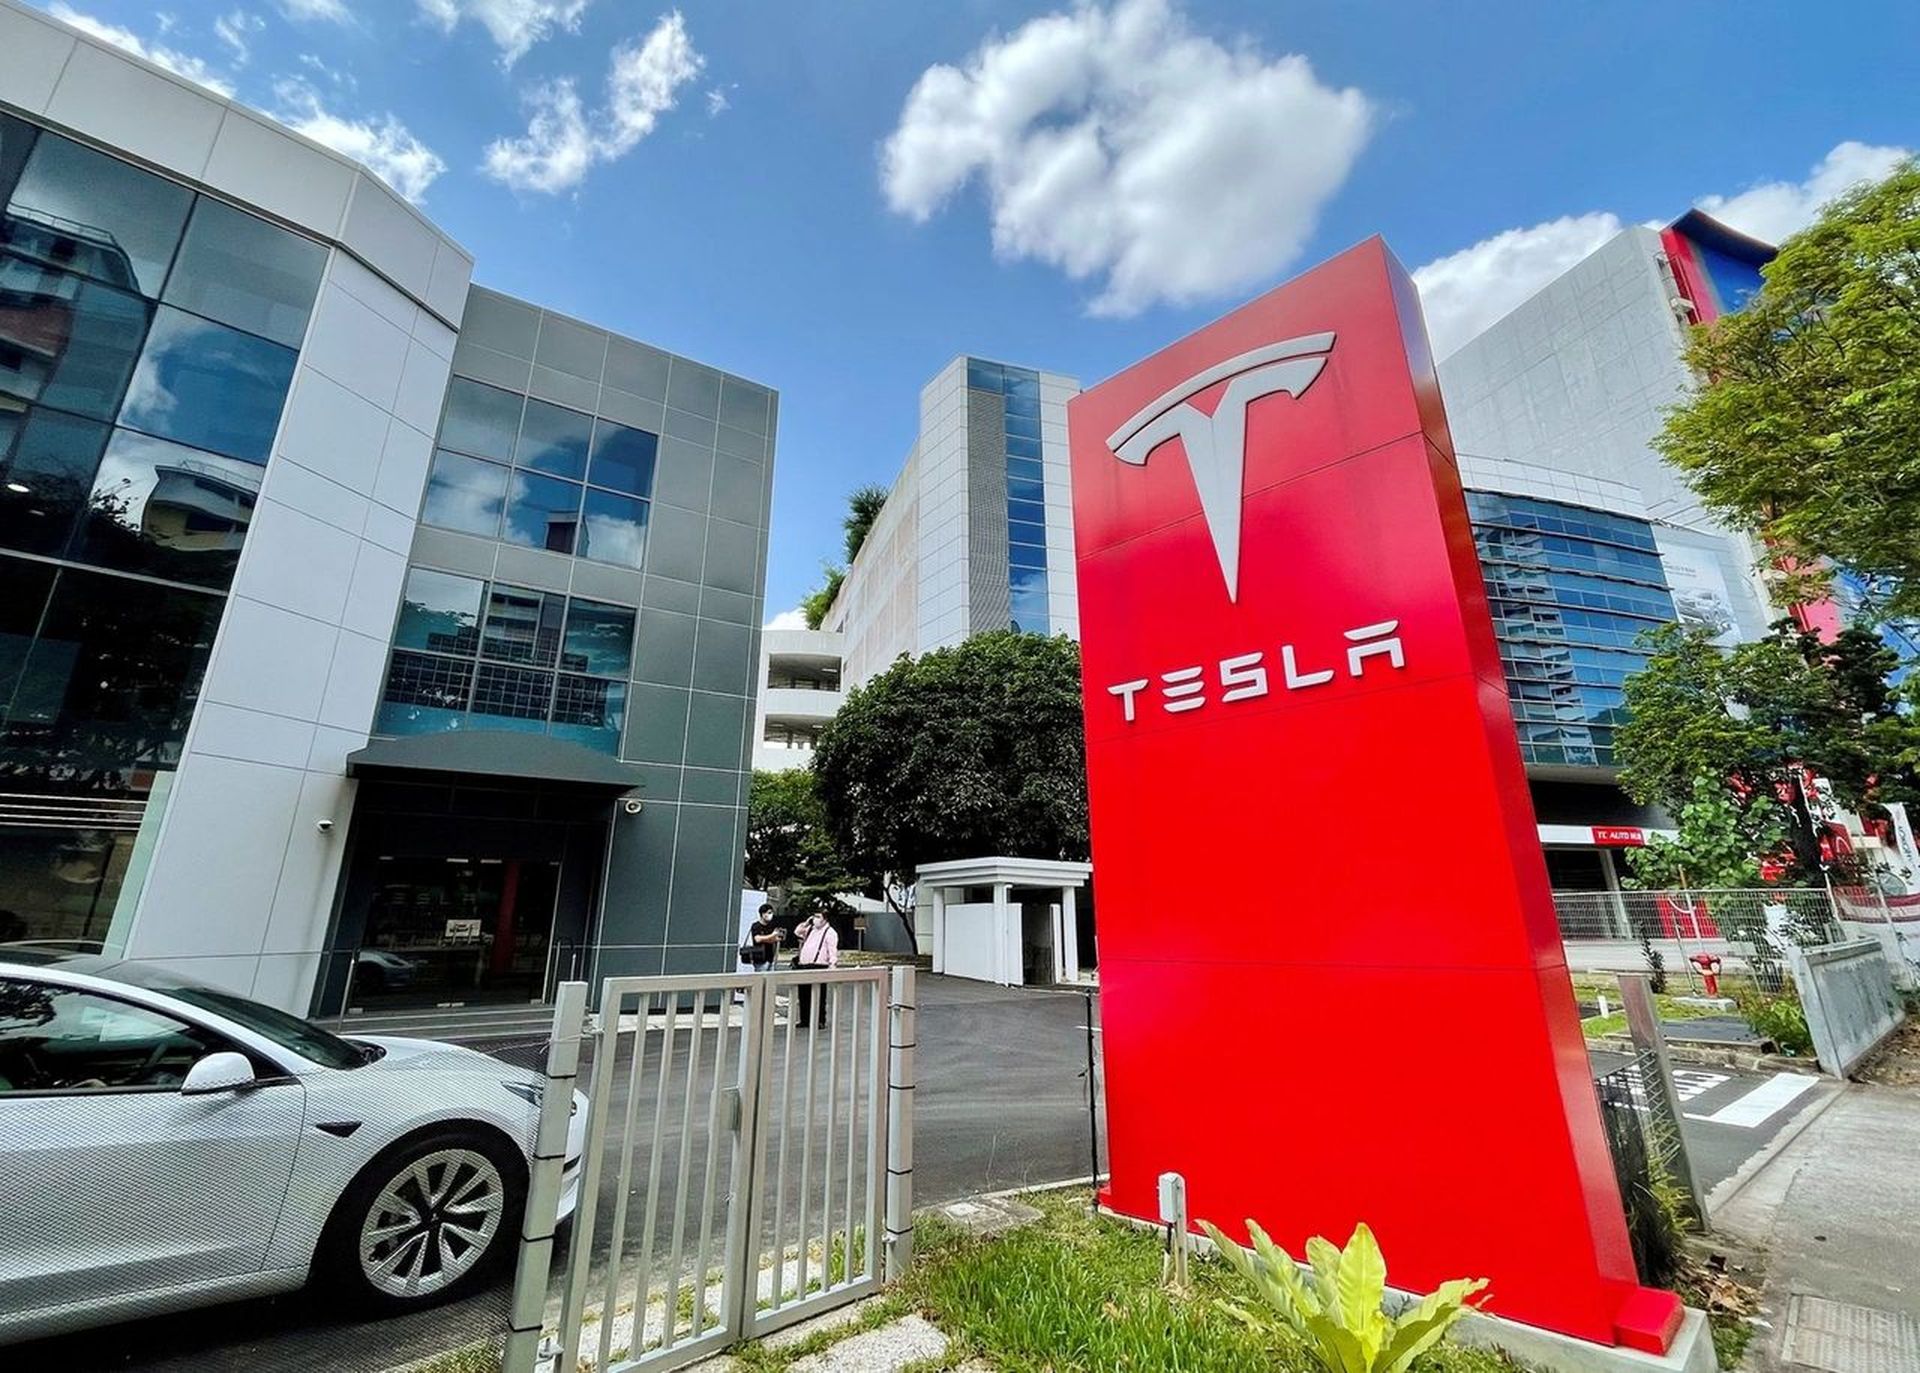 Heute behandeln wir, wie Sie die Tesla-Aktionärsversammlung 2022 verfolgen können, damit Sie erfahren, welche Entscheidungen getroffen werden, die sich auf die Zukunft des Unternehmens auswirken werden.